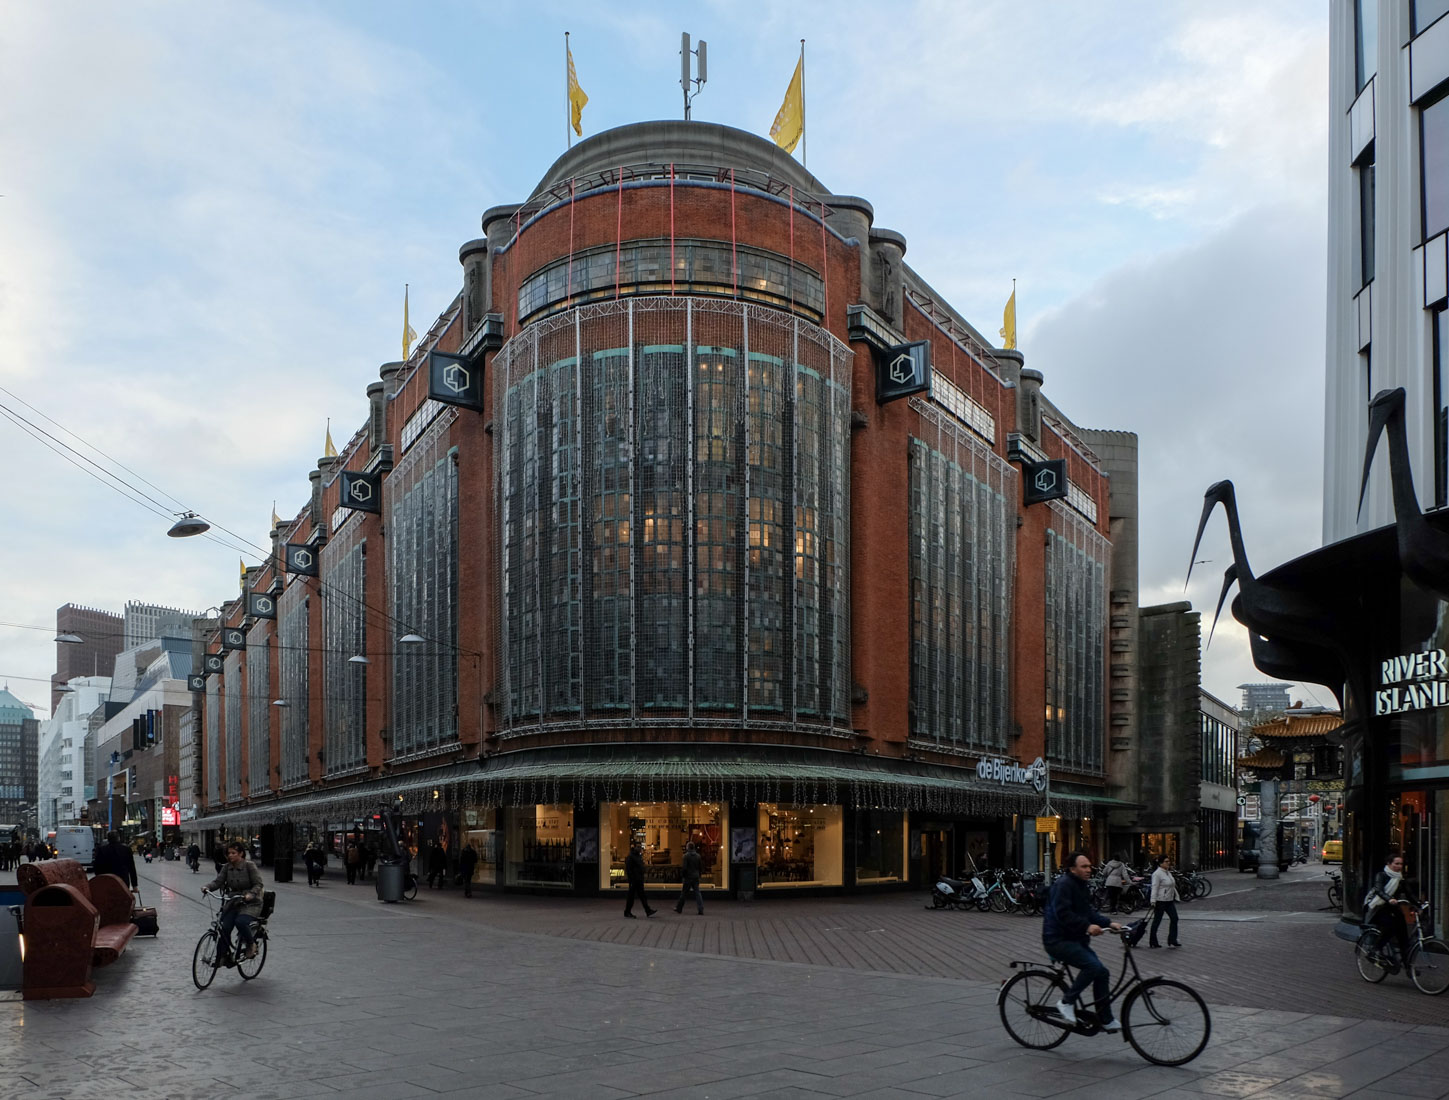  Piet Kramer - Department Store De Bijenkorf